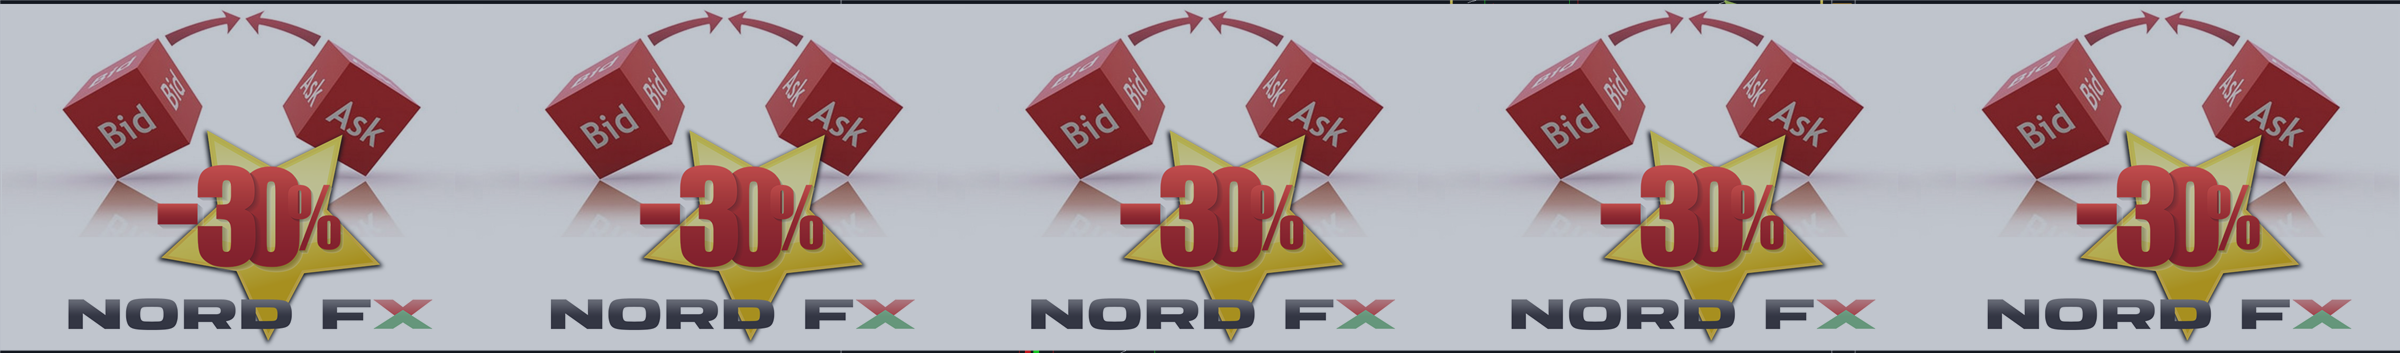 NordFX бьет рекорды по улучшению торговых условий